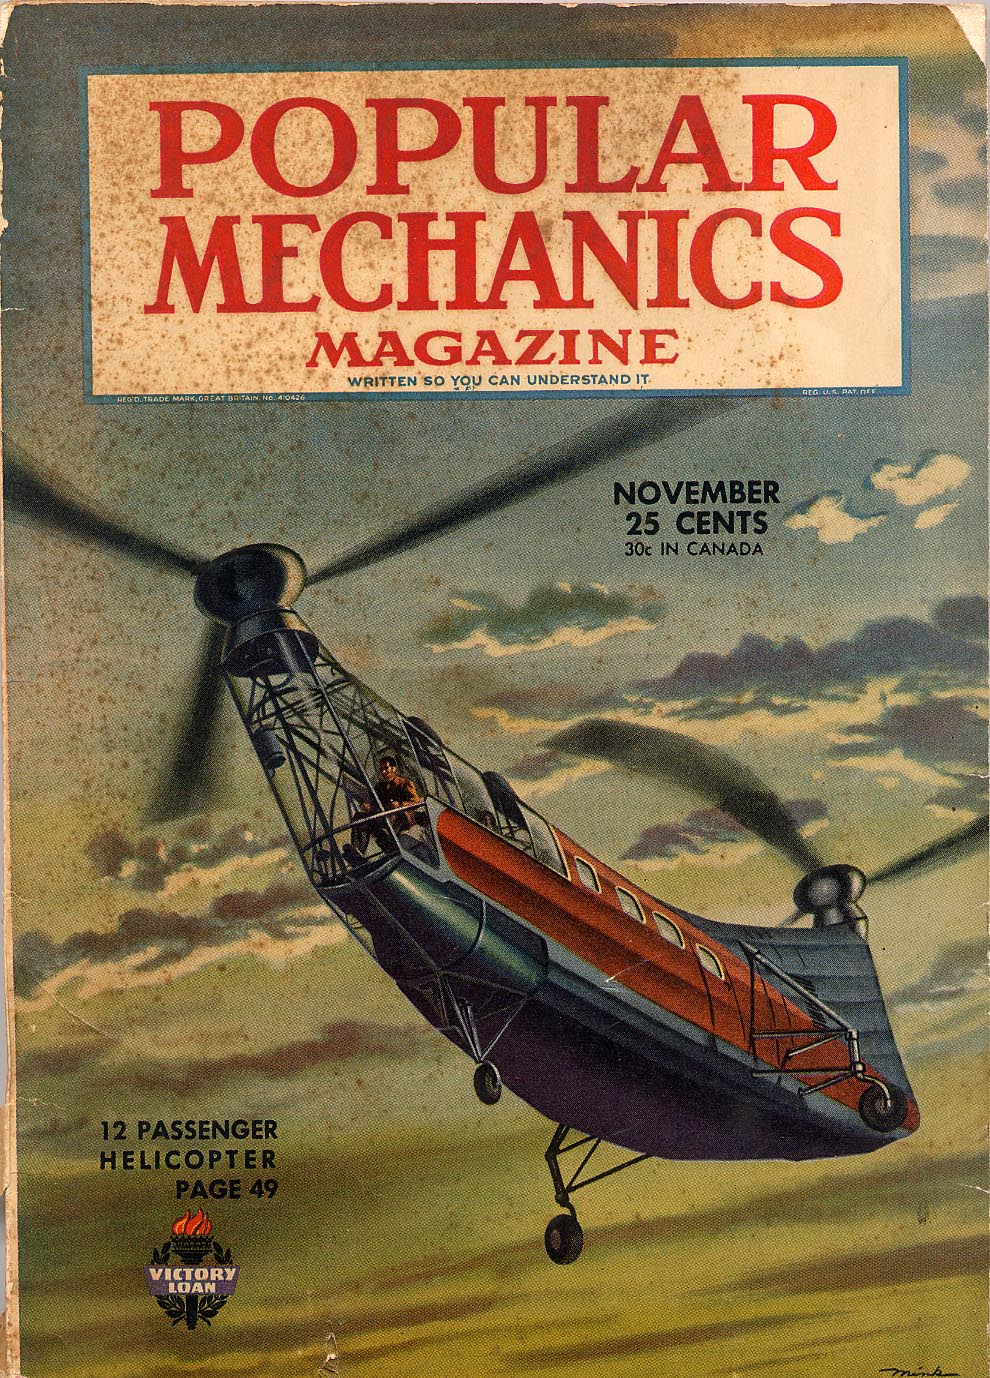 Cover of Popular Mechanics Magazine Nov. 1944